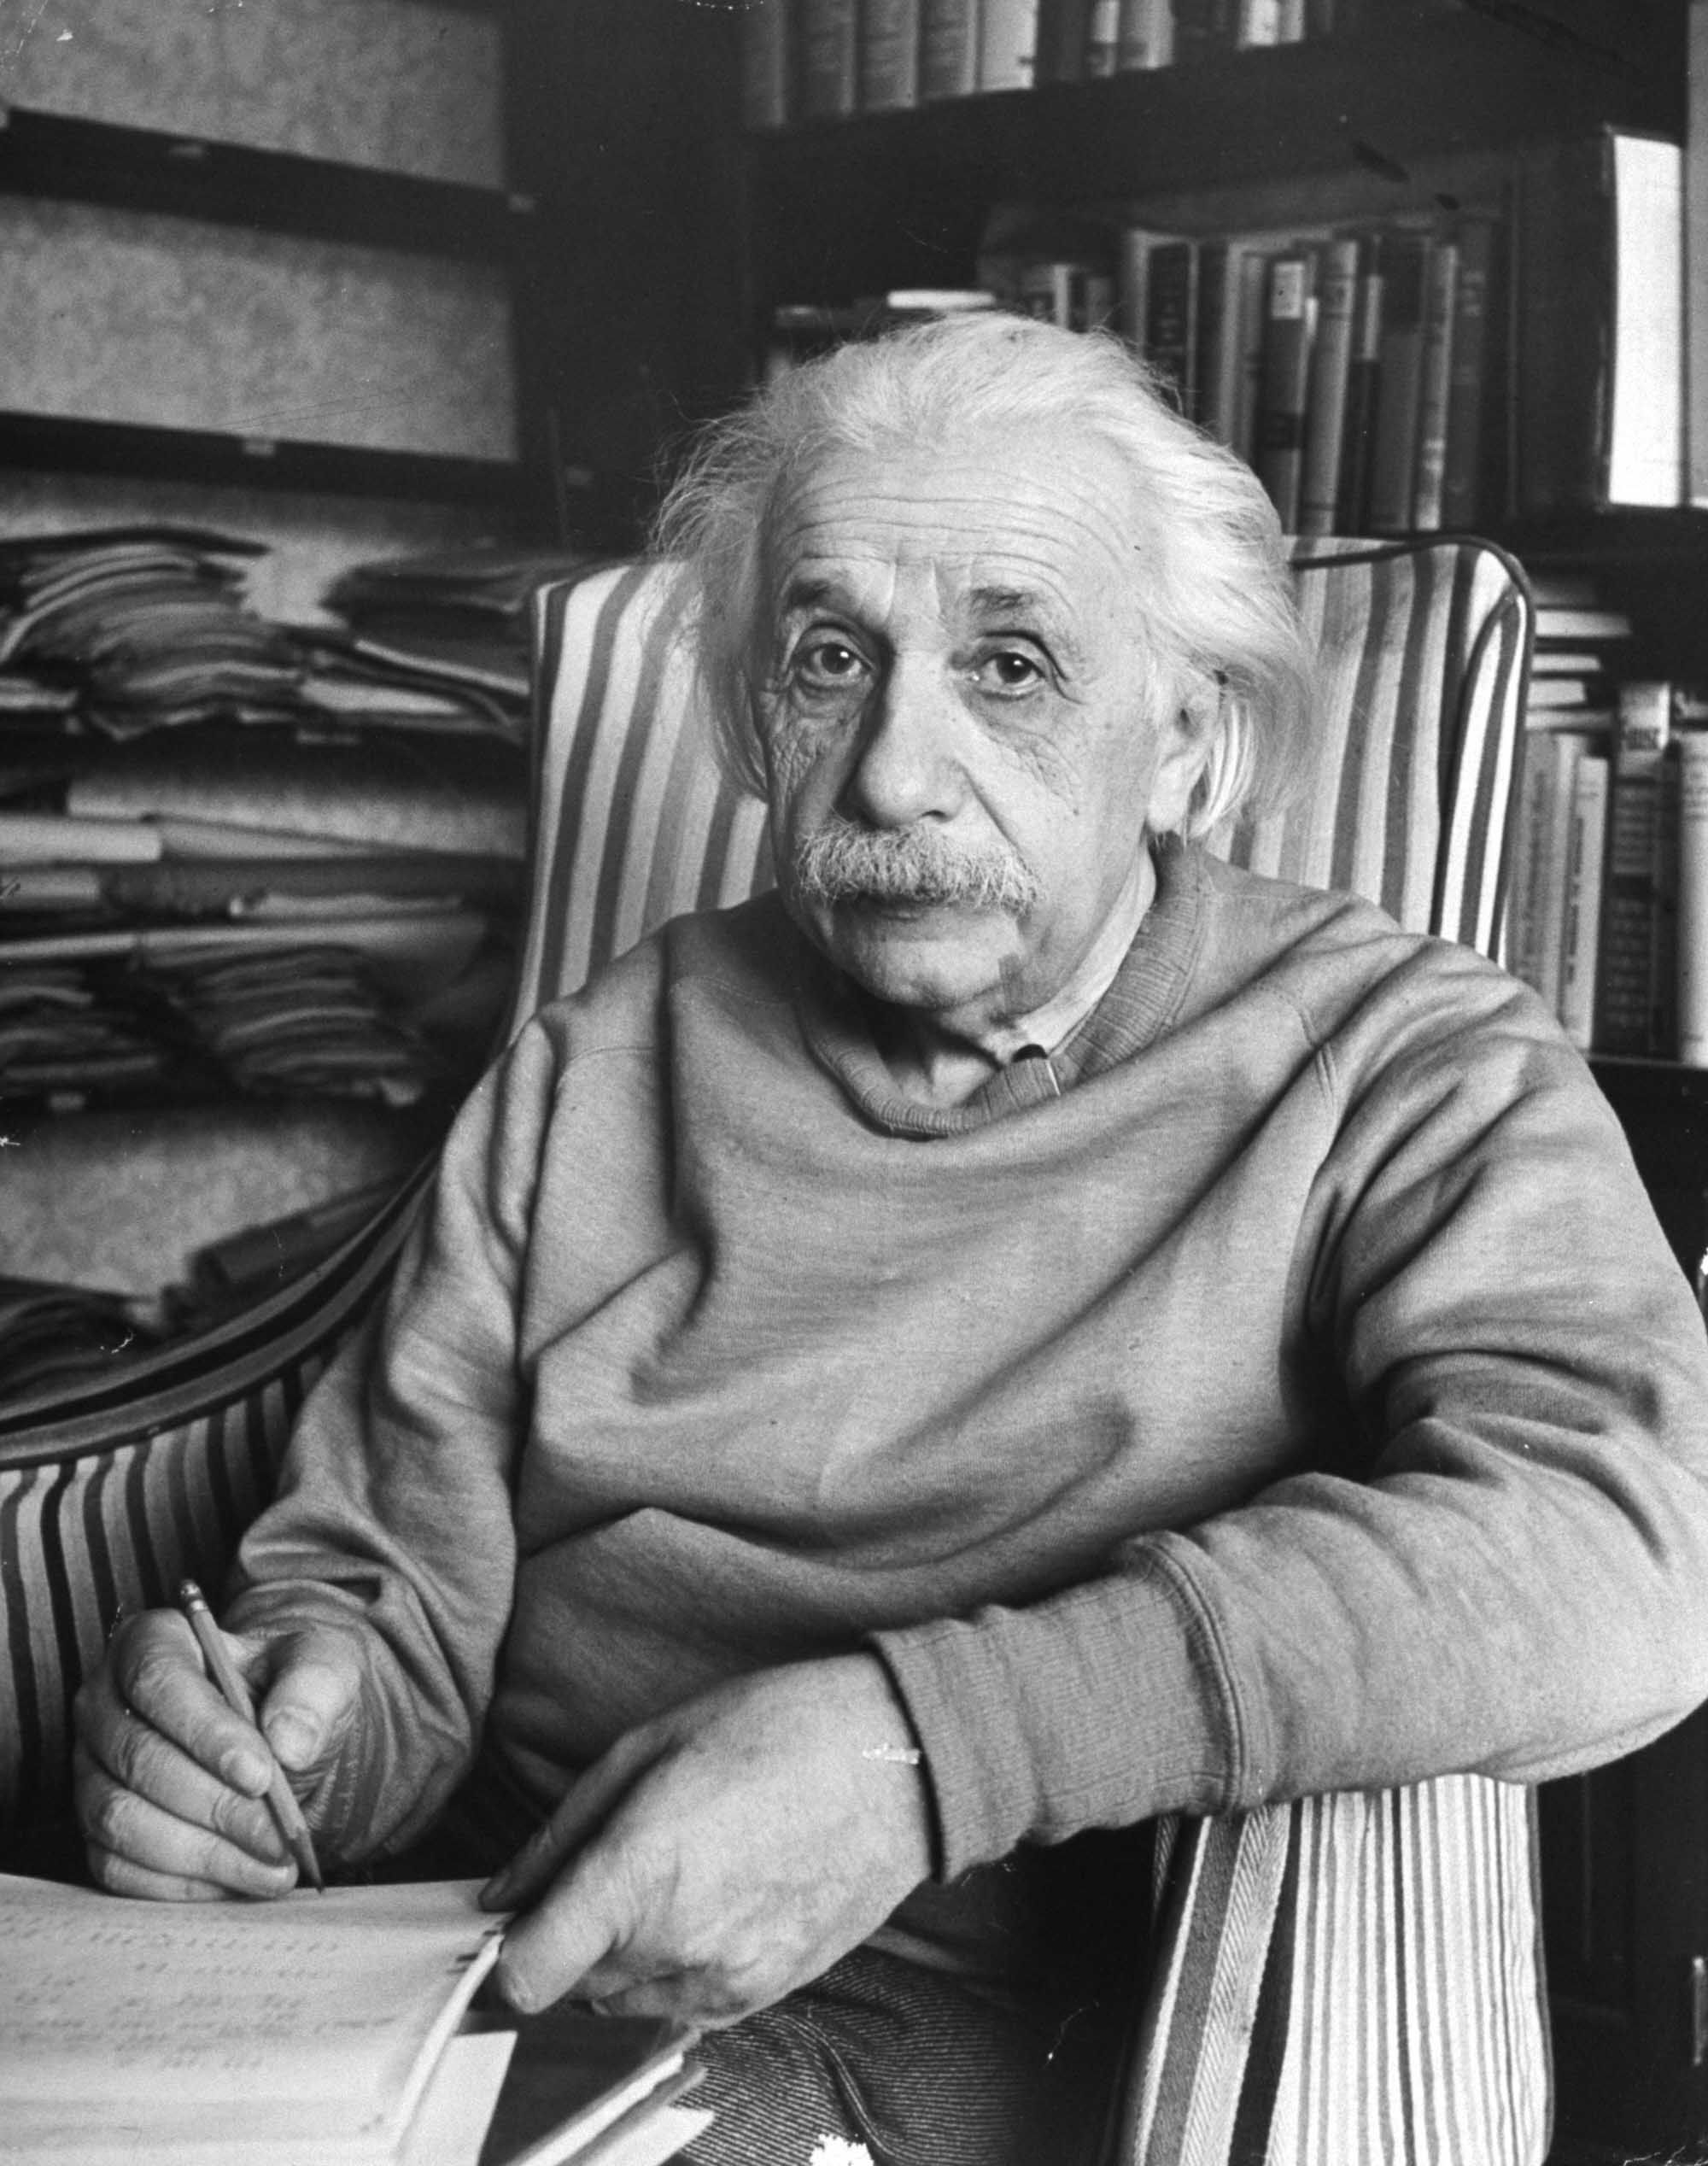 Albert einstein - Did you know? Einstein never won the Nobel Prize ...